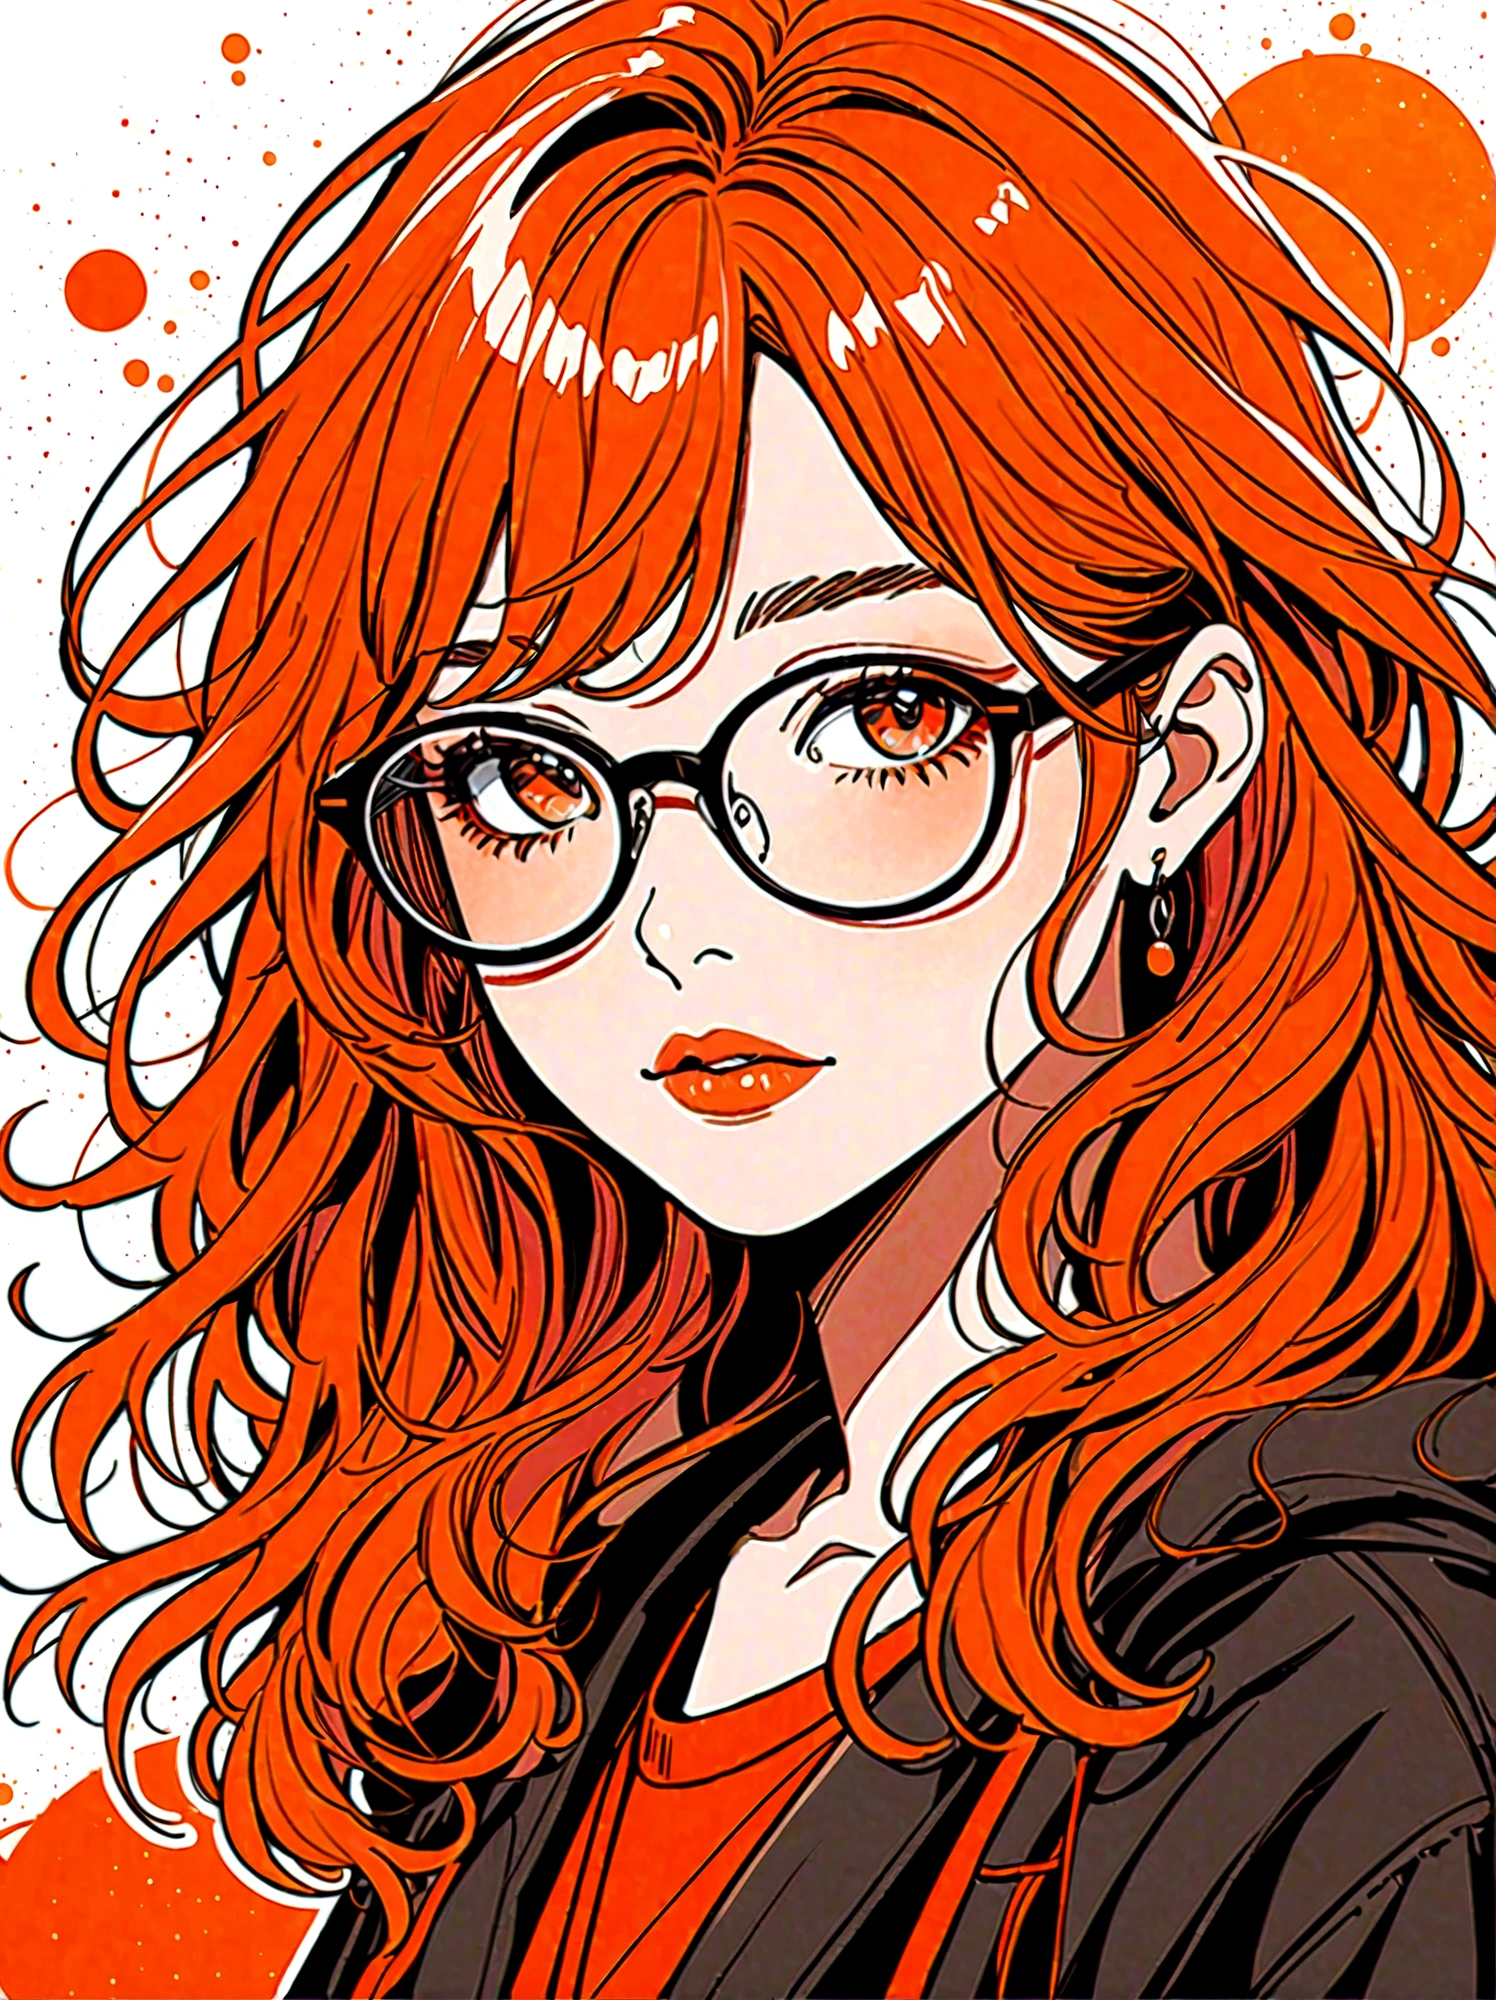 (傑作, 最高品質:1.2), 手描き漫画, 1人の女の子, 一人で, メガネを着用, ルージュ, ボサボサの髪, カラーパレットは赤です, オレンジと黒の色調でスケッチ風のスタイル. 背景にはシンプルな手描きの落書き模様が描かれている必要があります, 1shxx1